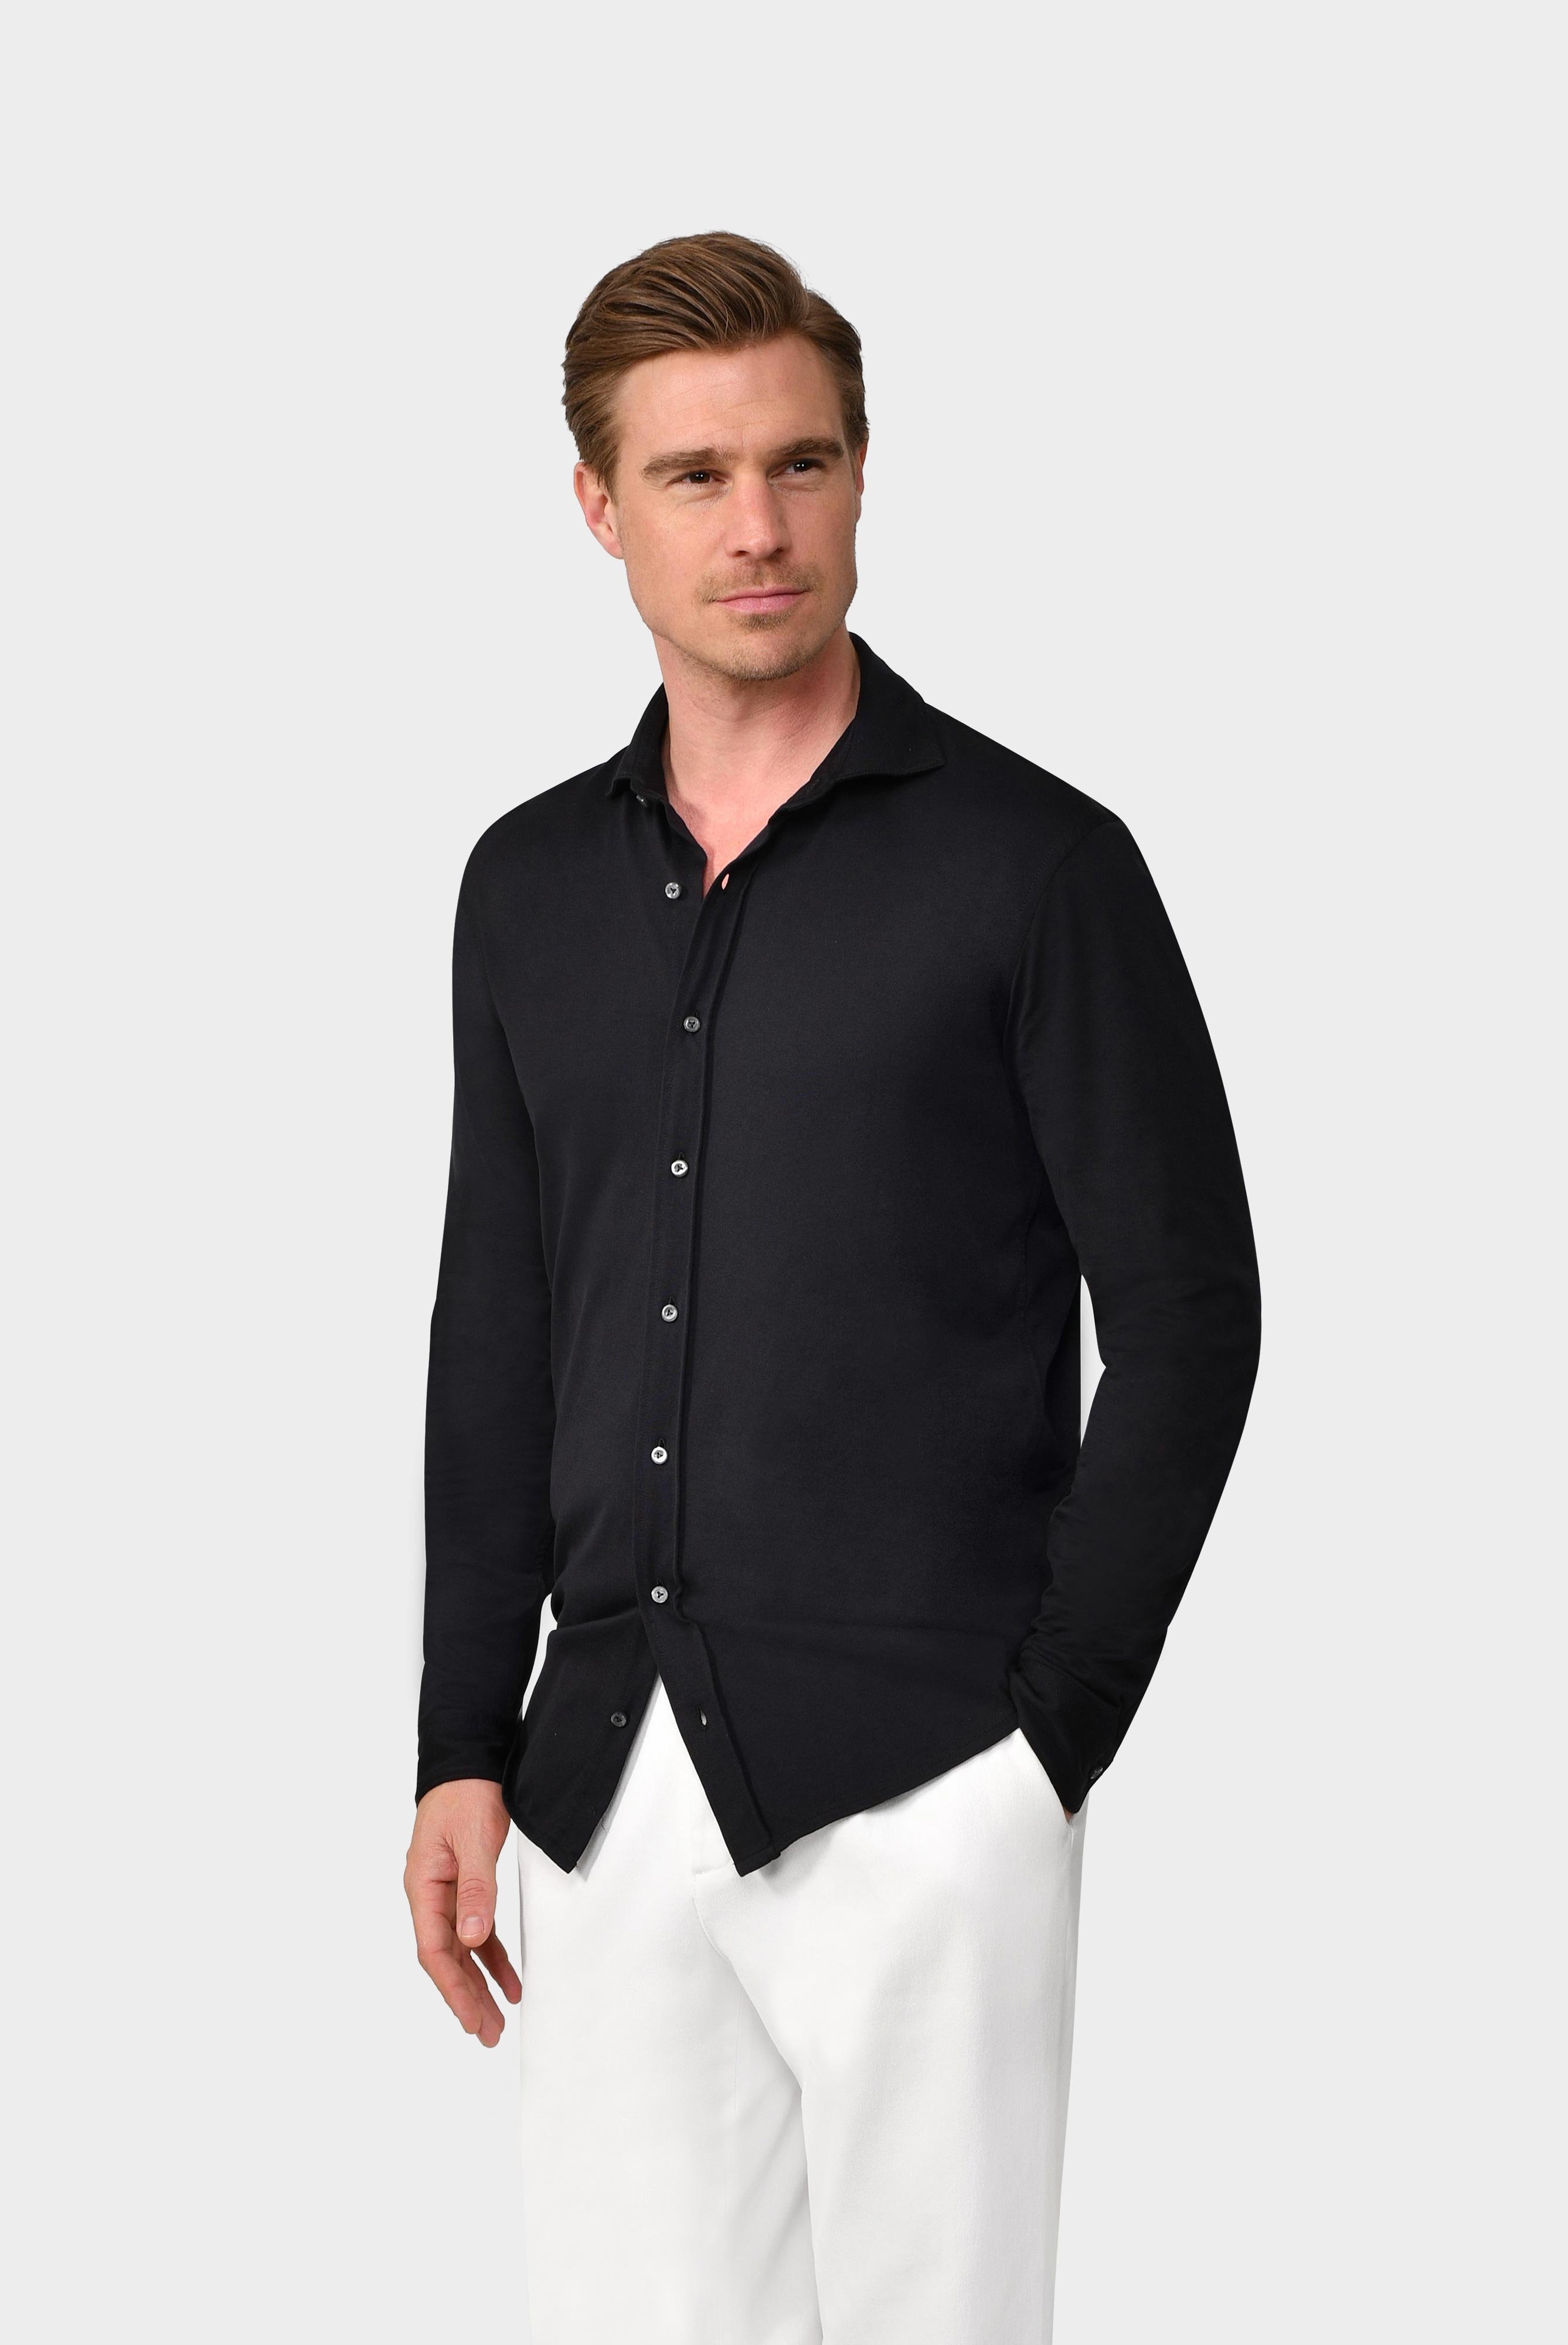 Jersey Hemden+Jersey Shirt Urban Look Slim Fit+20.1651.UC.Z20044.099.S